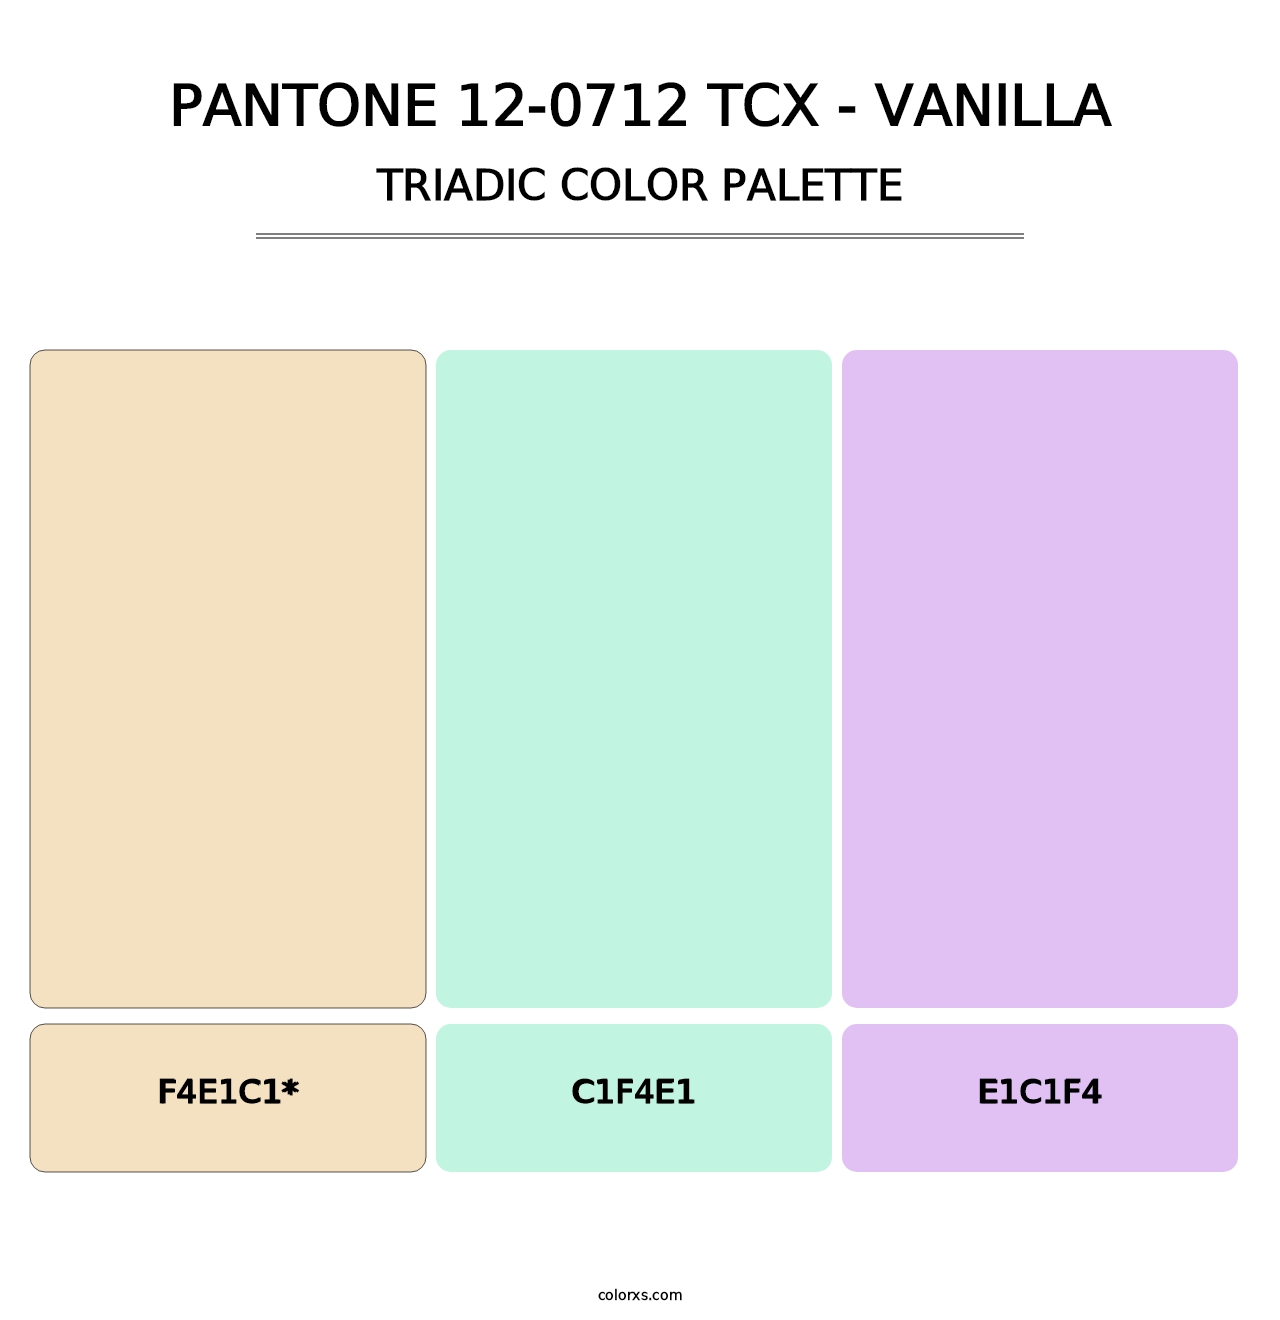 PANTONE 12-0712 TCX - Vanilla - Triadic Color Palette